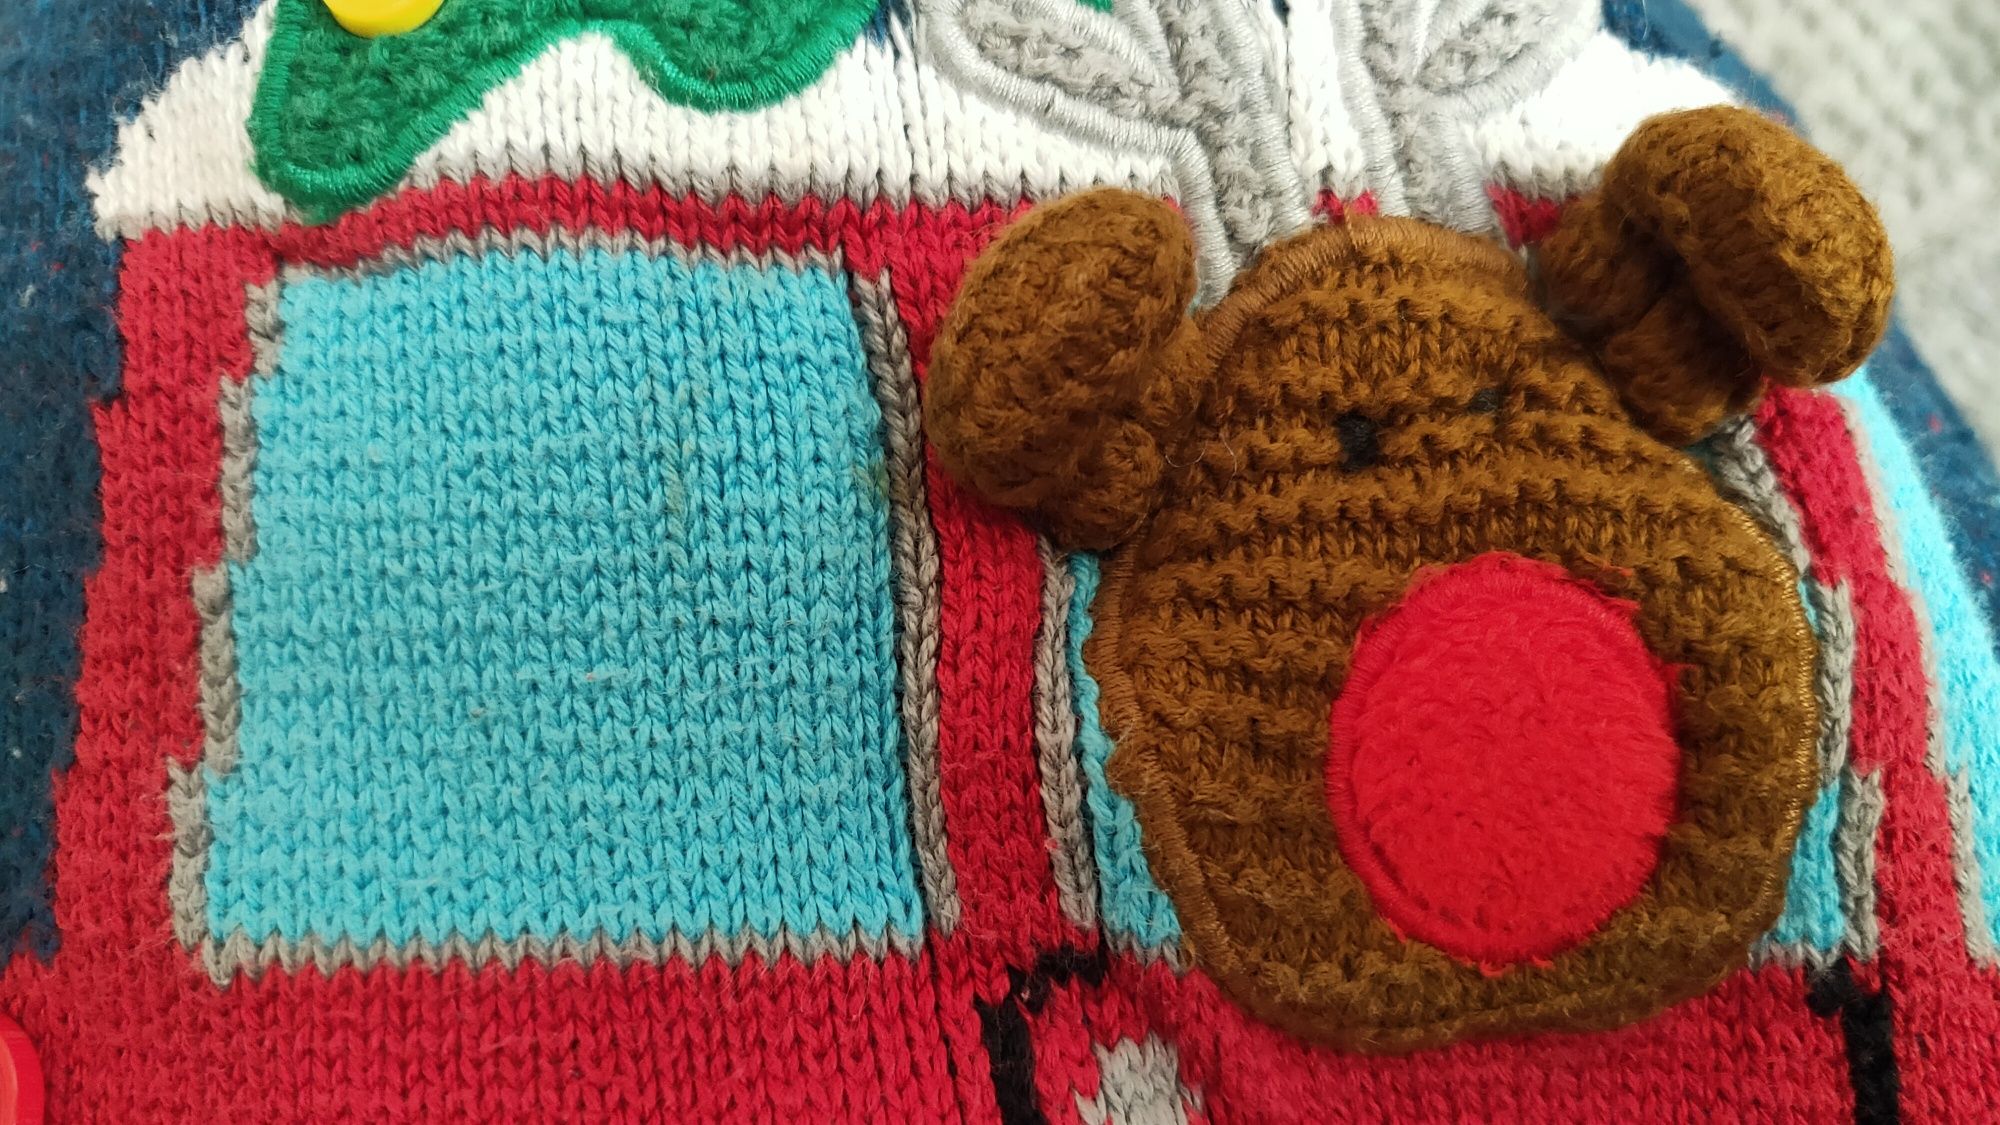 Sweter świąteczny 86-92 choinka